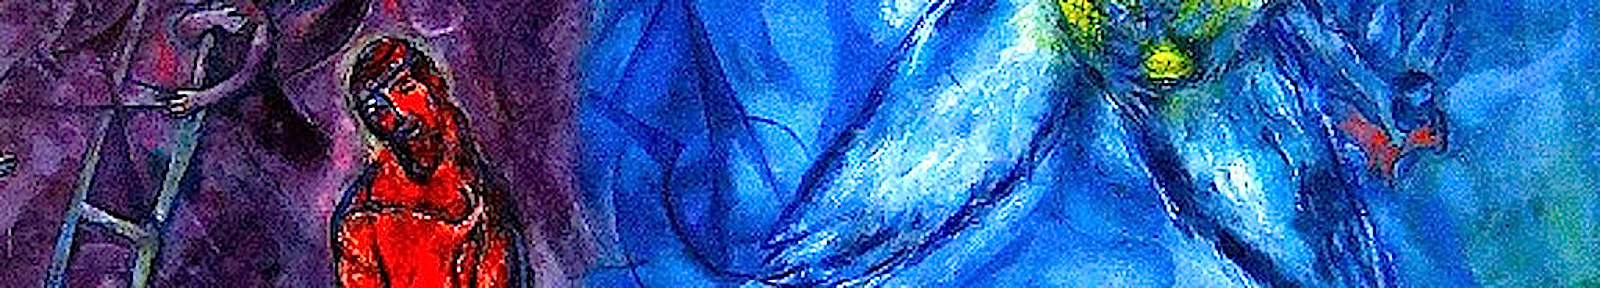 Лествица Иакова. Часть изображения Марка Шагала